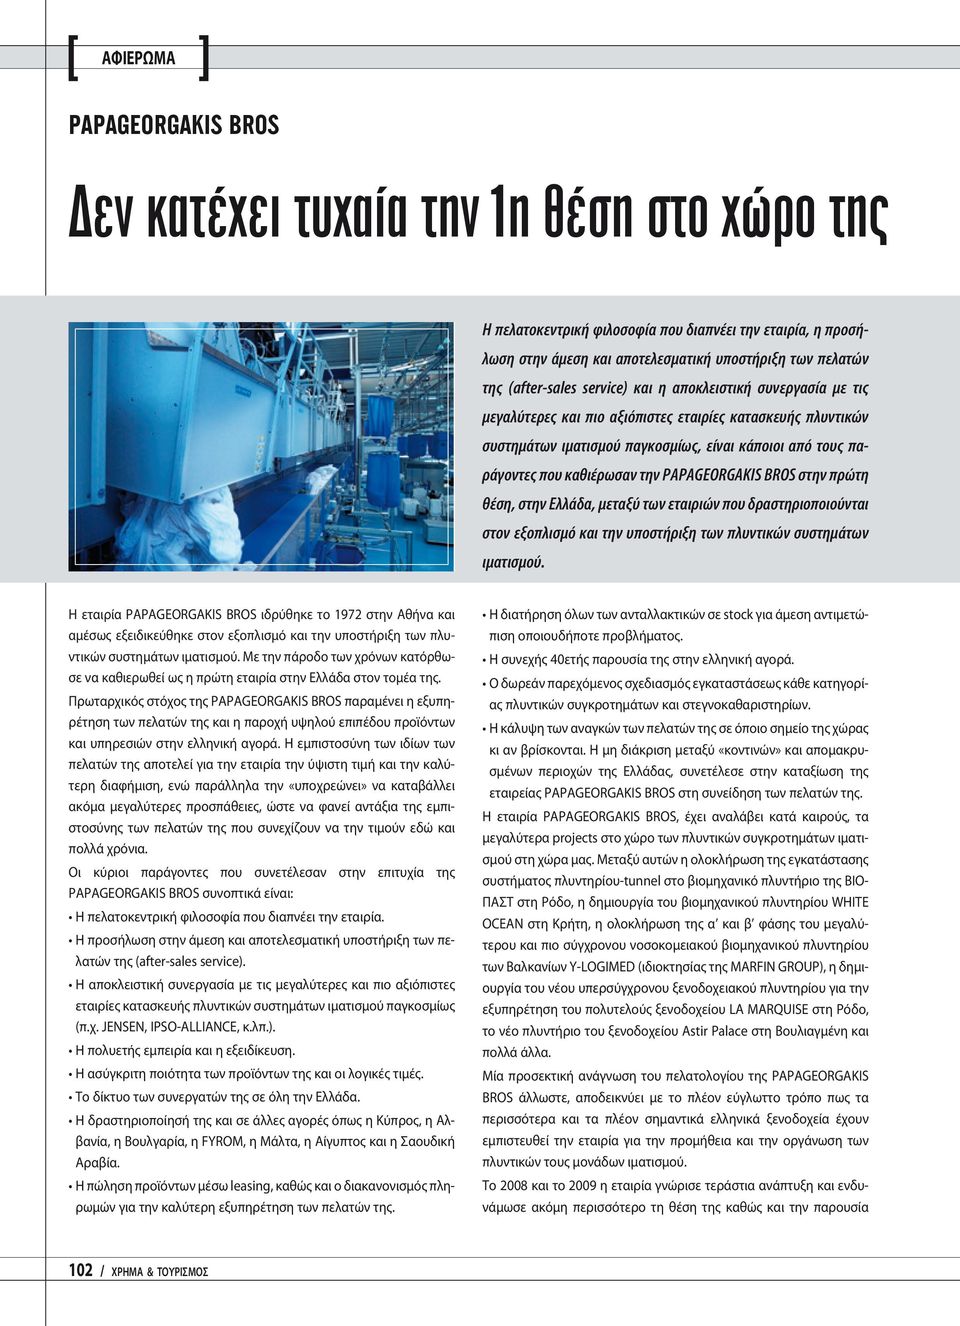 PAPAGEORGAKIS BROS στην πρώτη θέση, στην Ελλάδα, μεταξύ των εταιριών που δραστηριοποιούνται στον εξοπλισμό και την υποστήριξη των πλυντικών συστημάτων ιματισμού.